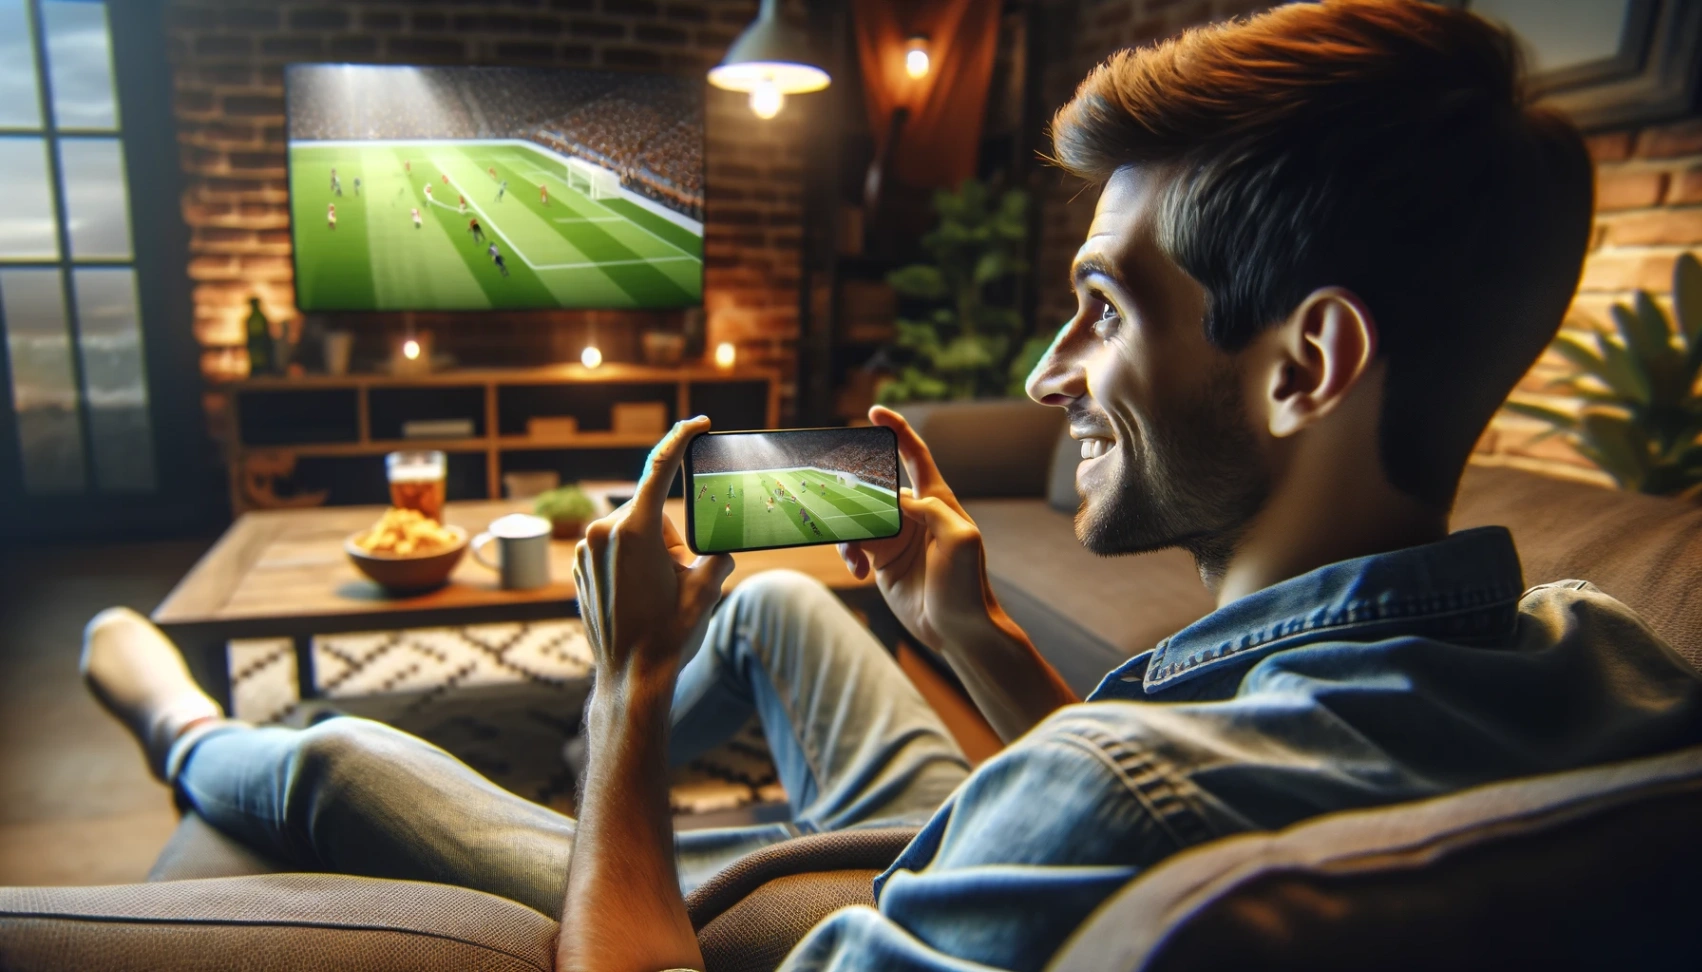 App om Voetbal Online te Kijken - Leer Hoe te Downloaden